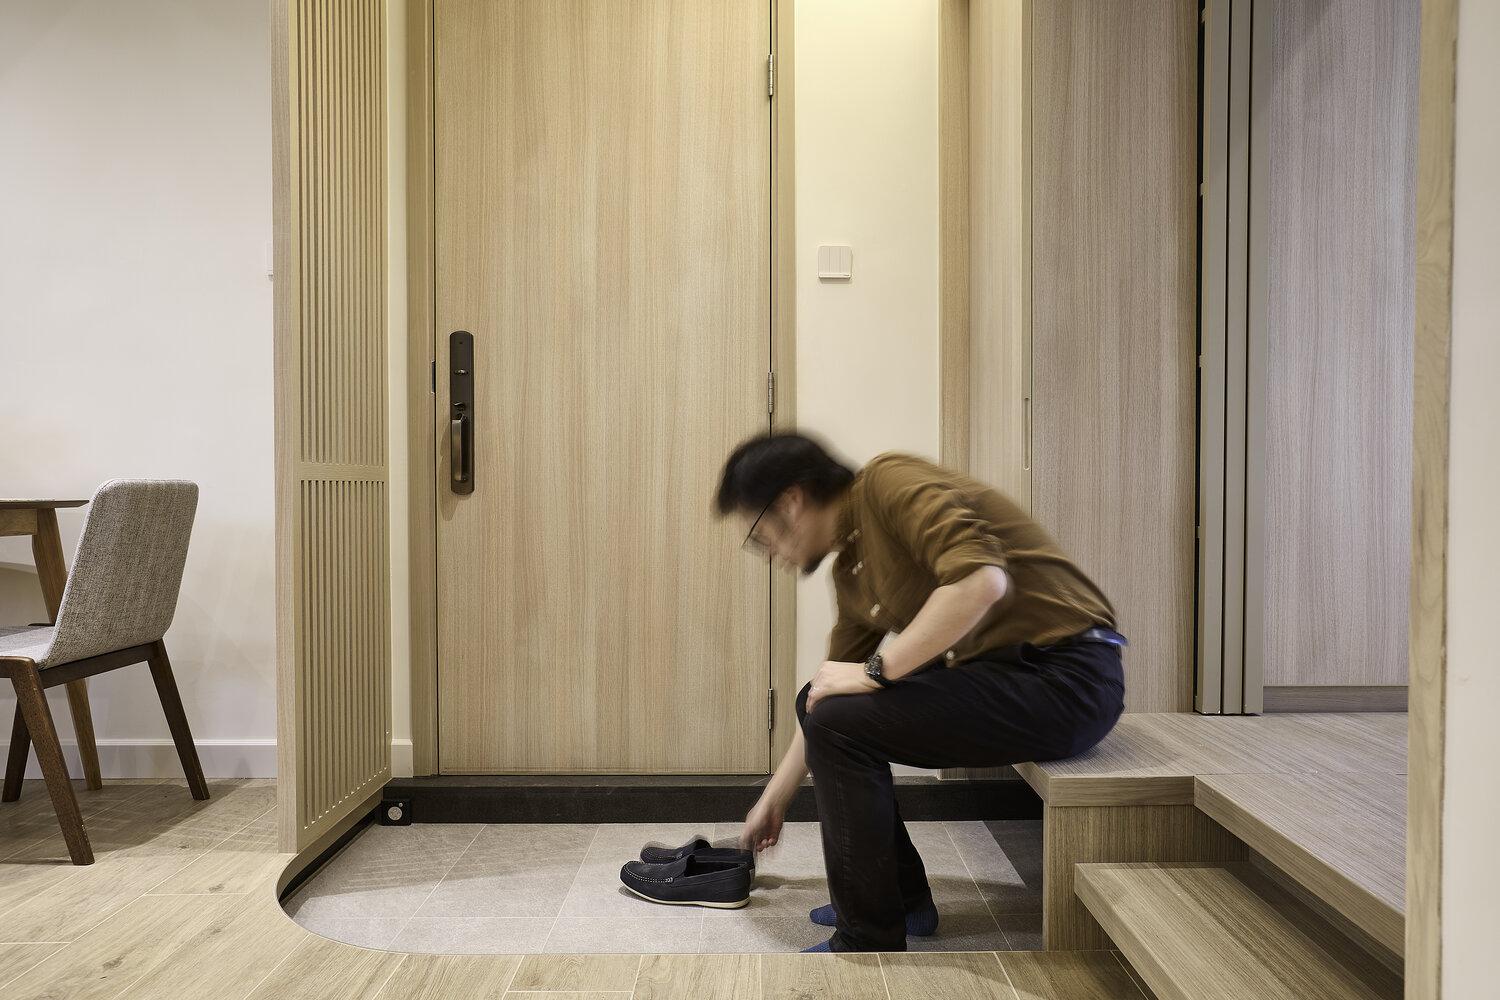 木材元素結合生活需求，走進荃灣一處日式旅館般的家居環境